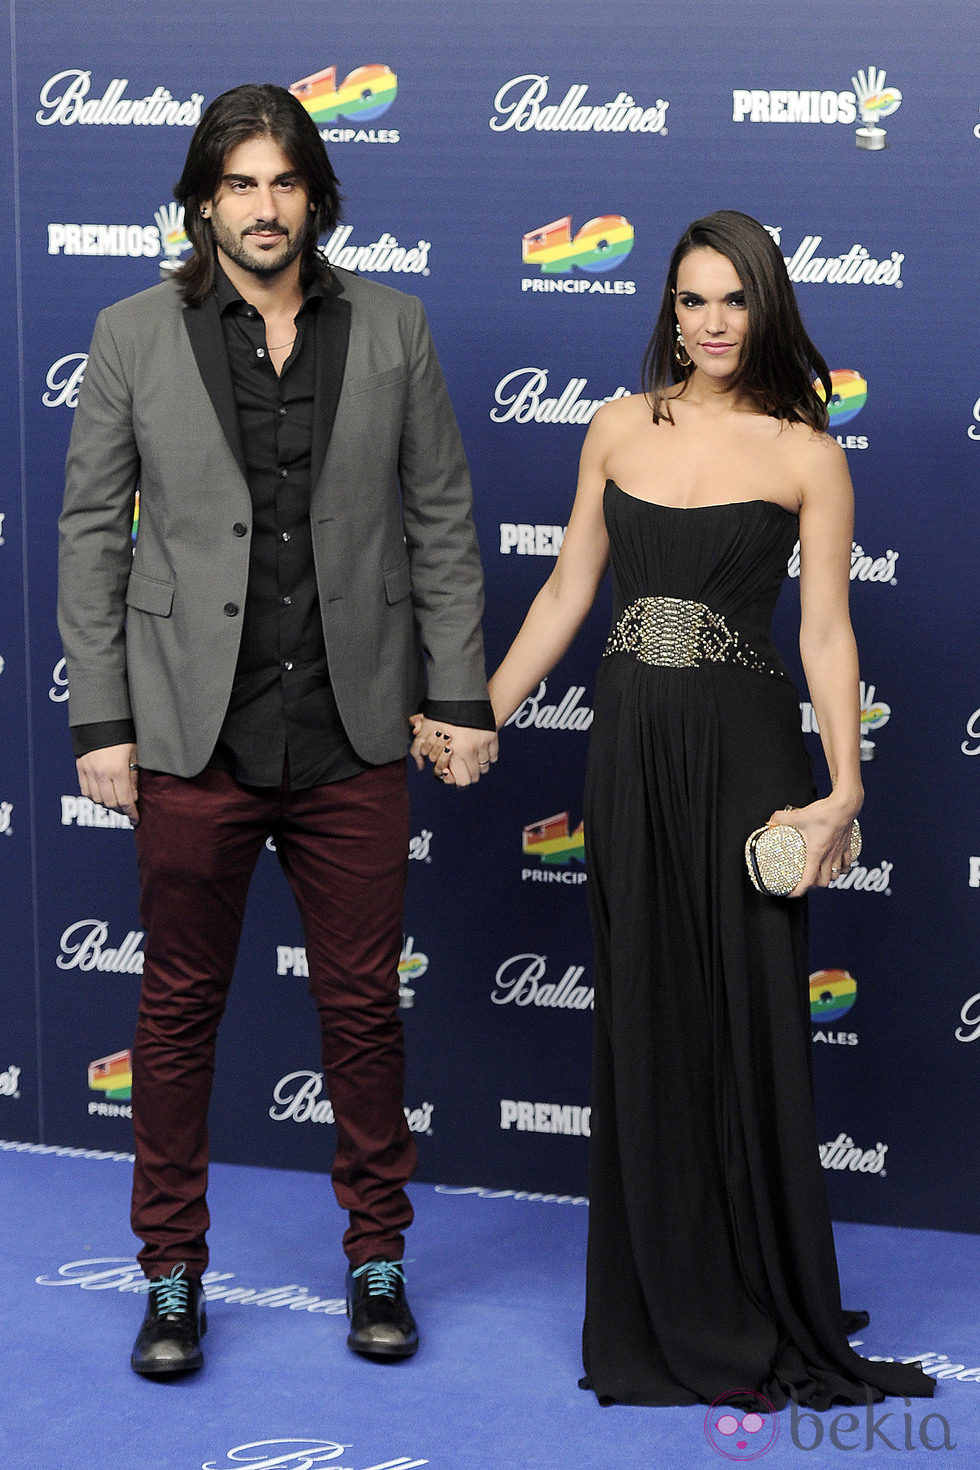 Melendi y La Dama en los Premios 40 Principales 2013